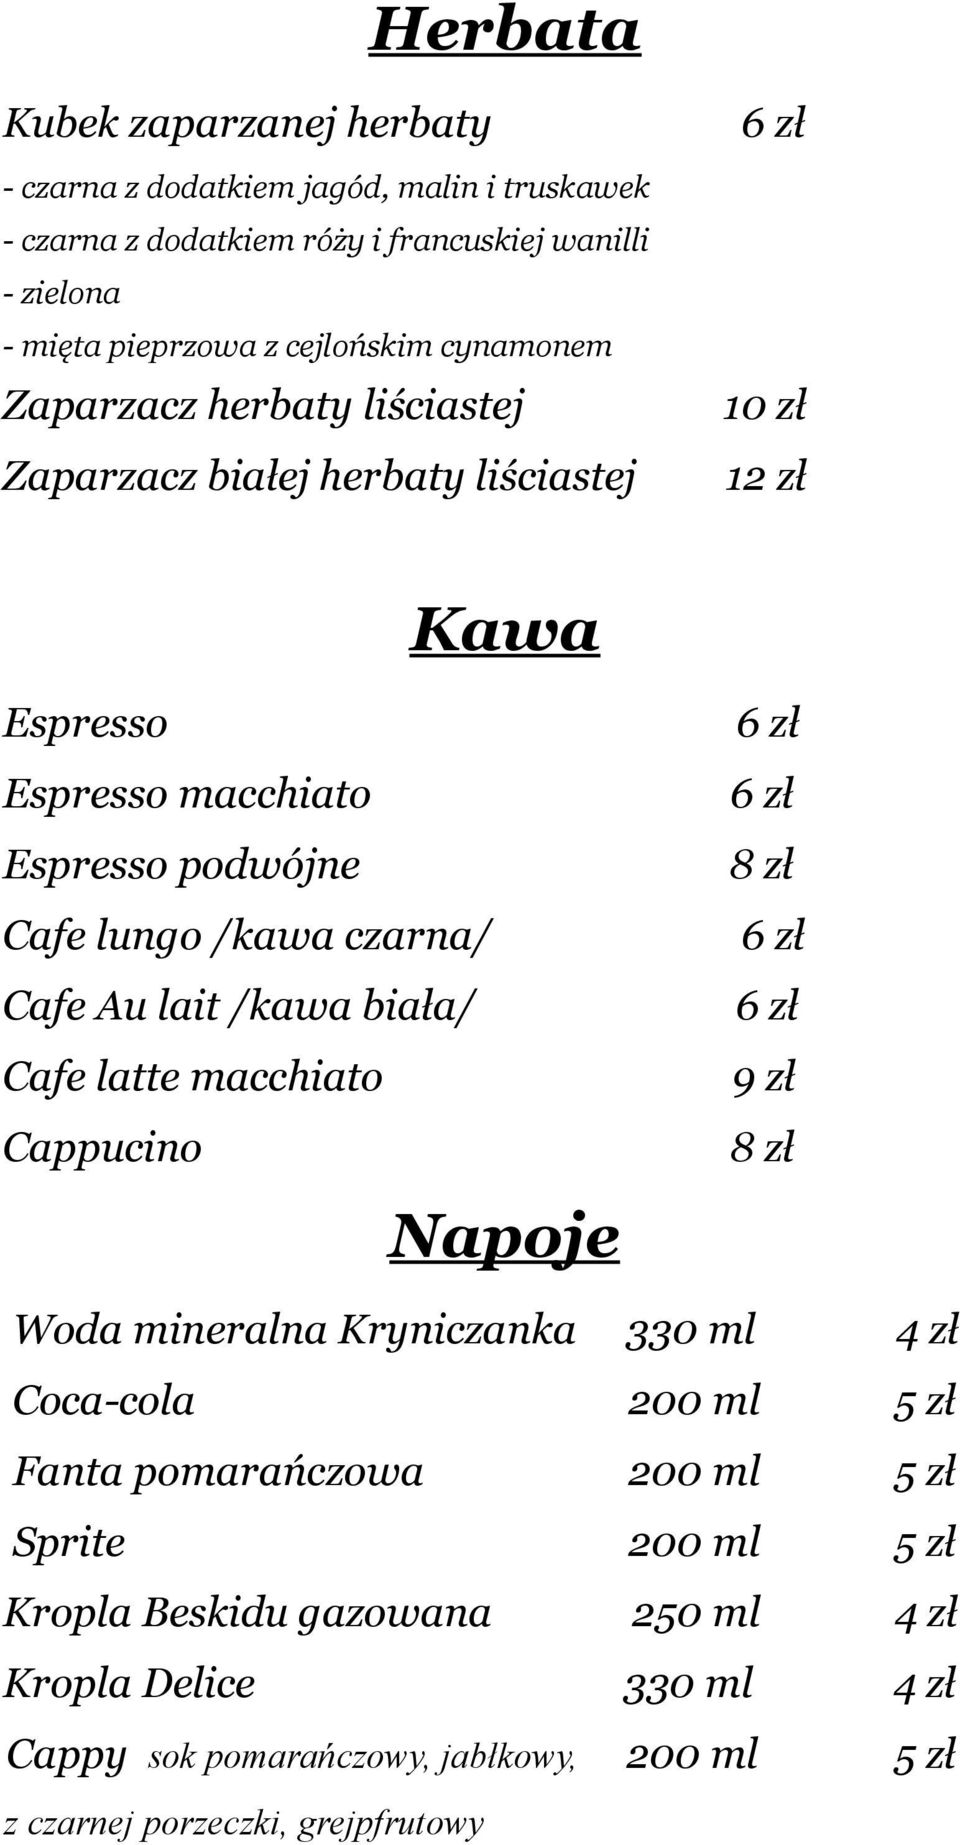 Cafe Au lait /kawa biała/ Cafe latte macchiato Cappucino Napoje 6 zł 6 zł 8 zł 6 zł 6 zł 9 zł 8 zł Woda mineralna Kryniczanka 330 ml 4 zł Coca-cola 200 ml 5 zł Fanta